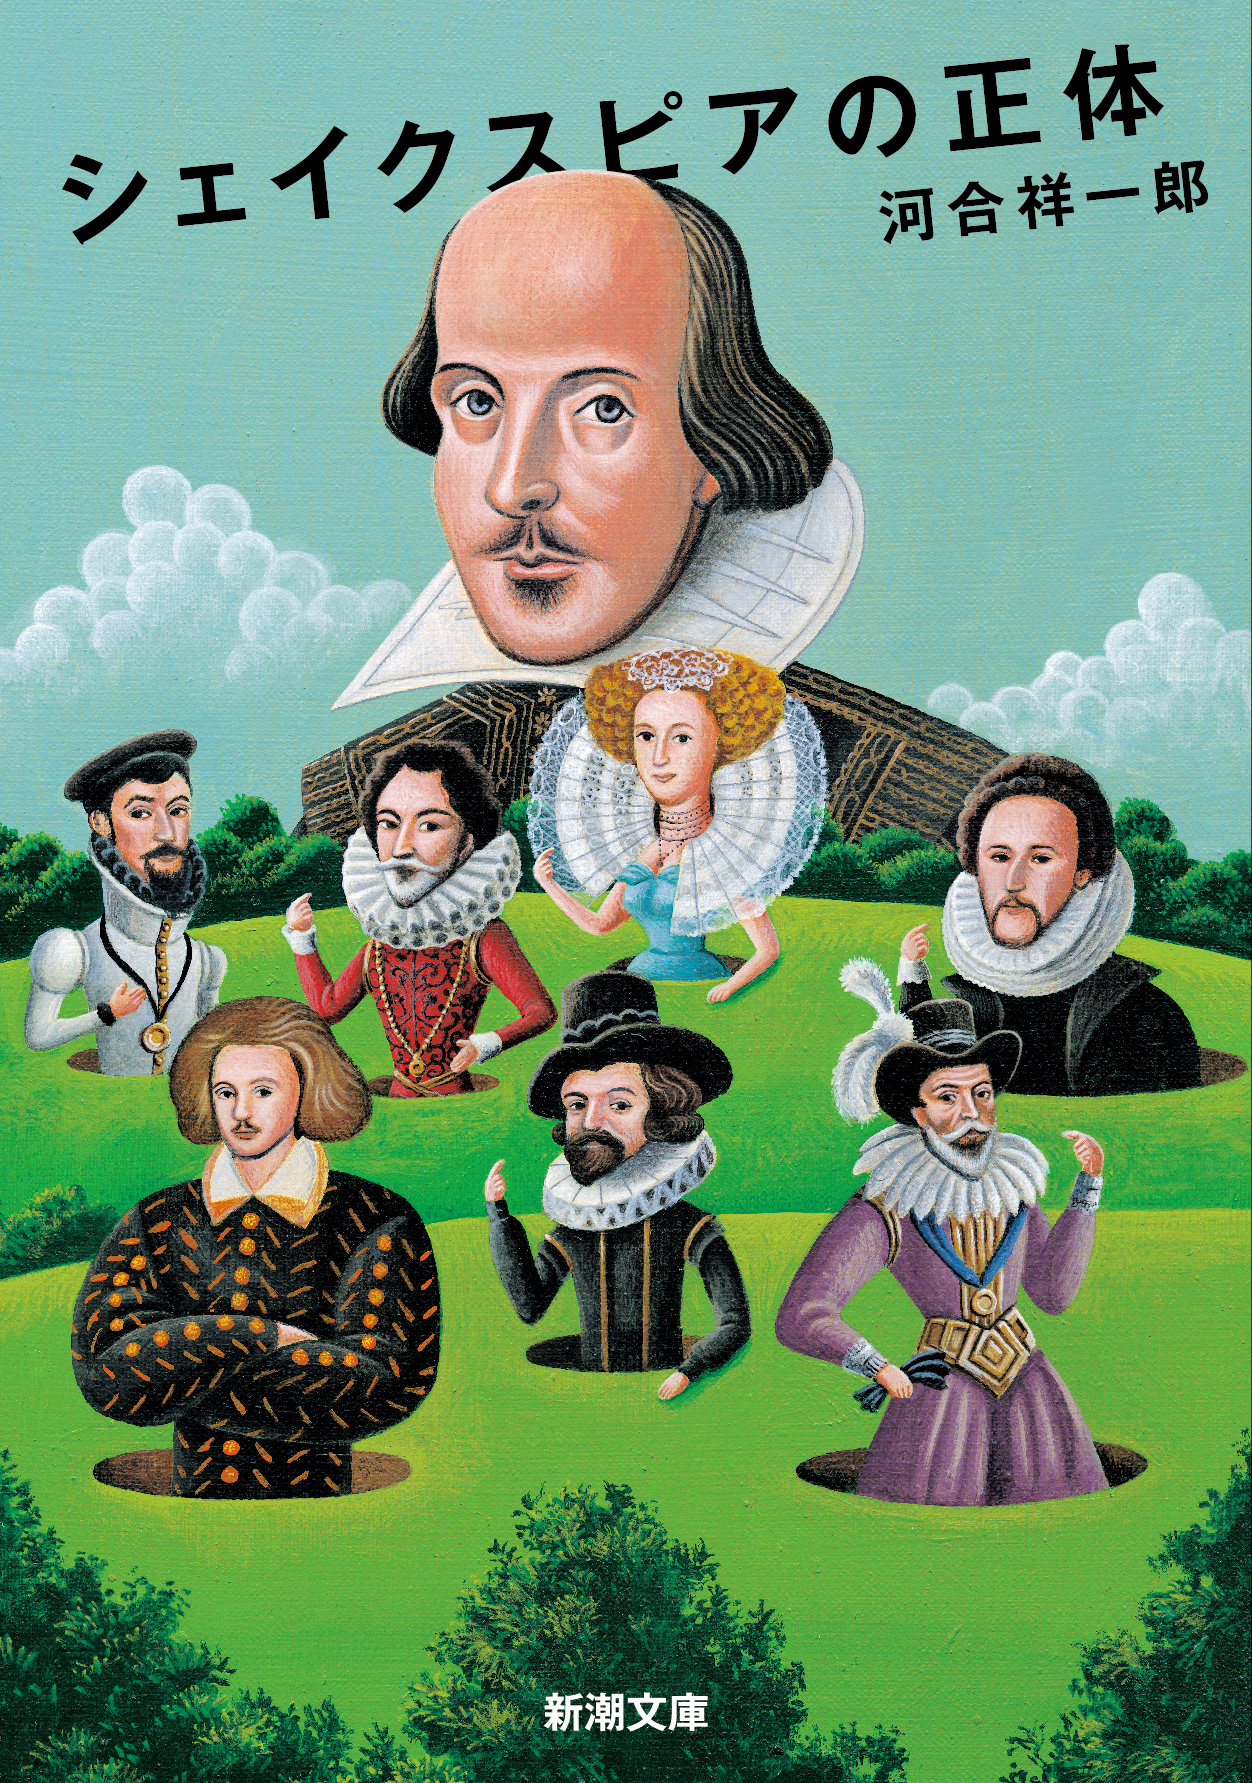 シェイクスピアとその周辺人物の自画像イラスト